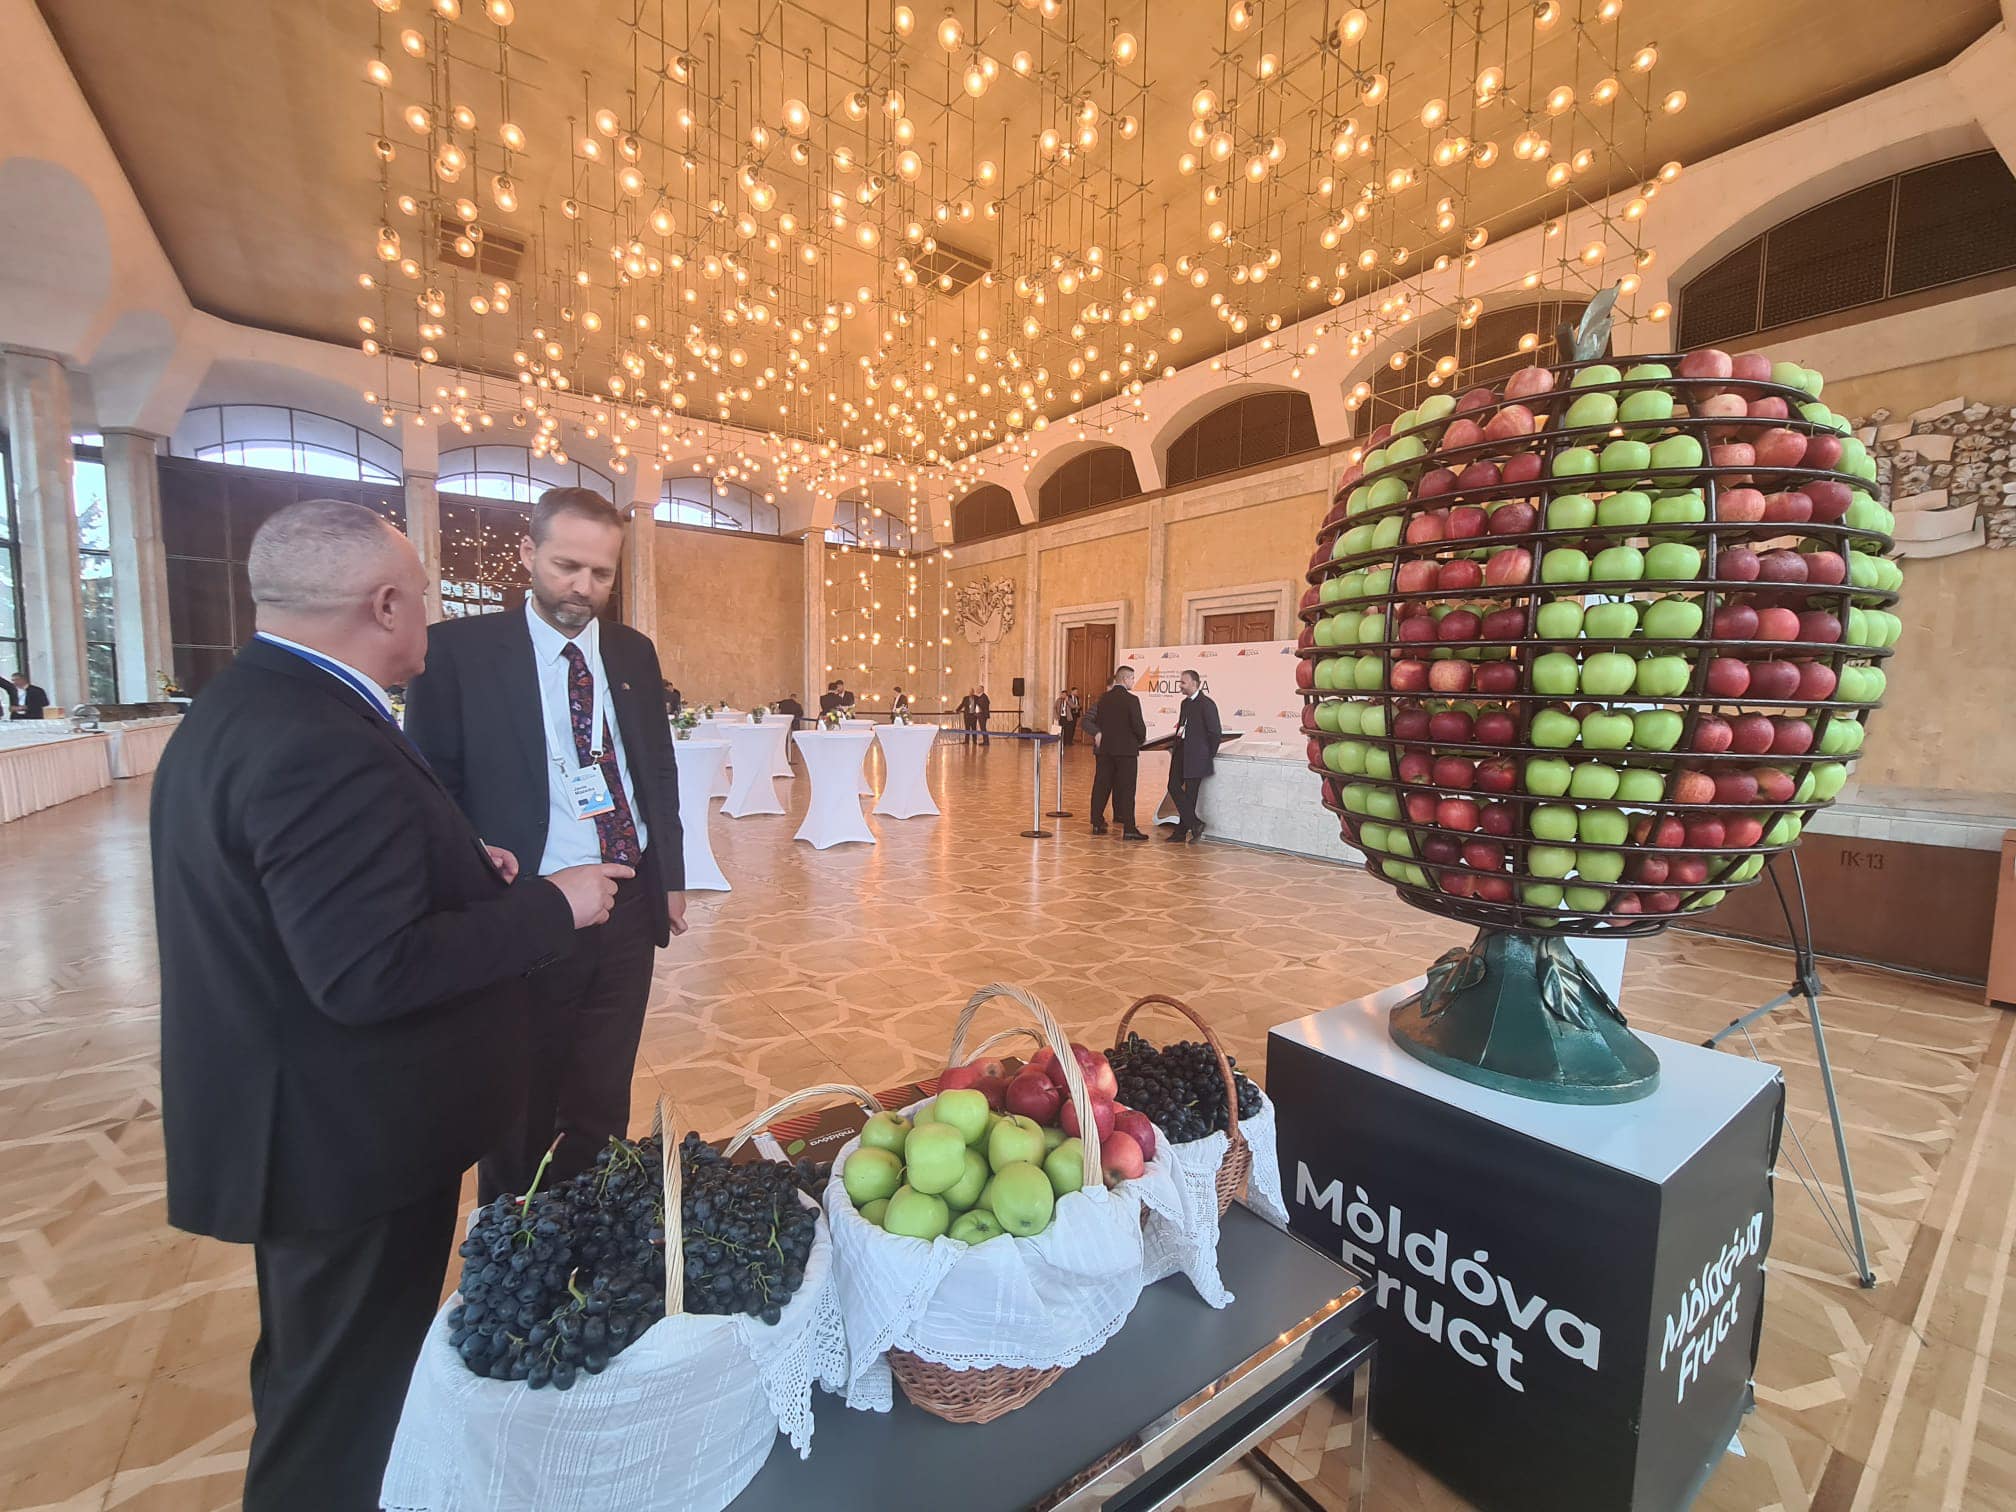 FOTO Dulciuri și fructe moldovenești pentru oficialii europeni reuniți la Chișinău. Cum au fost surprinși